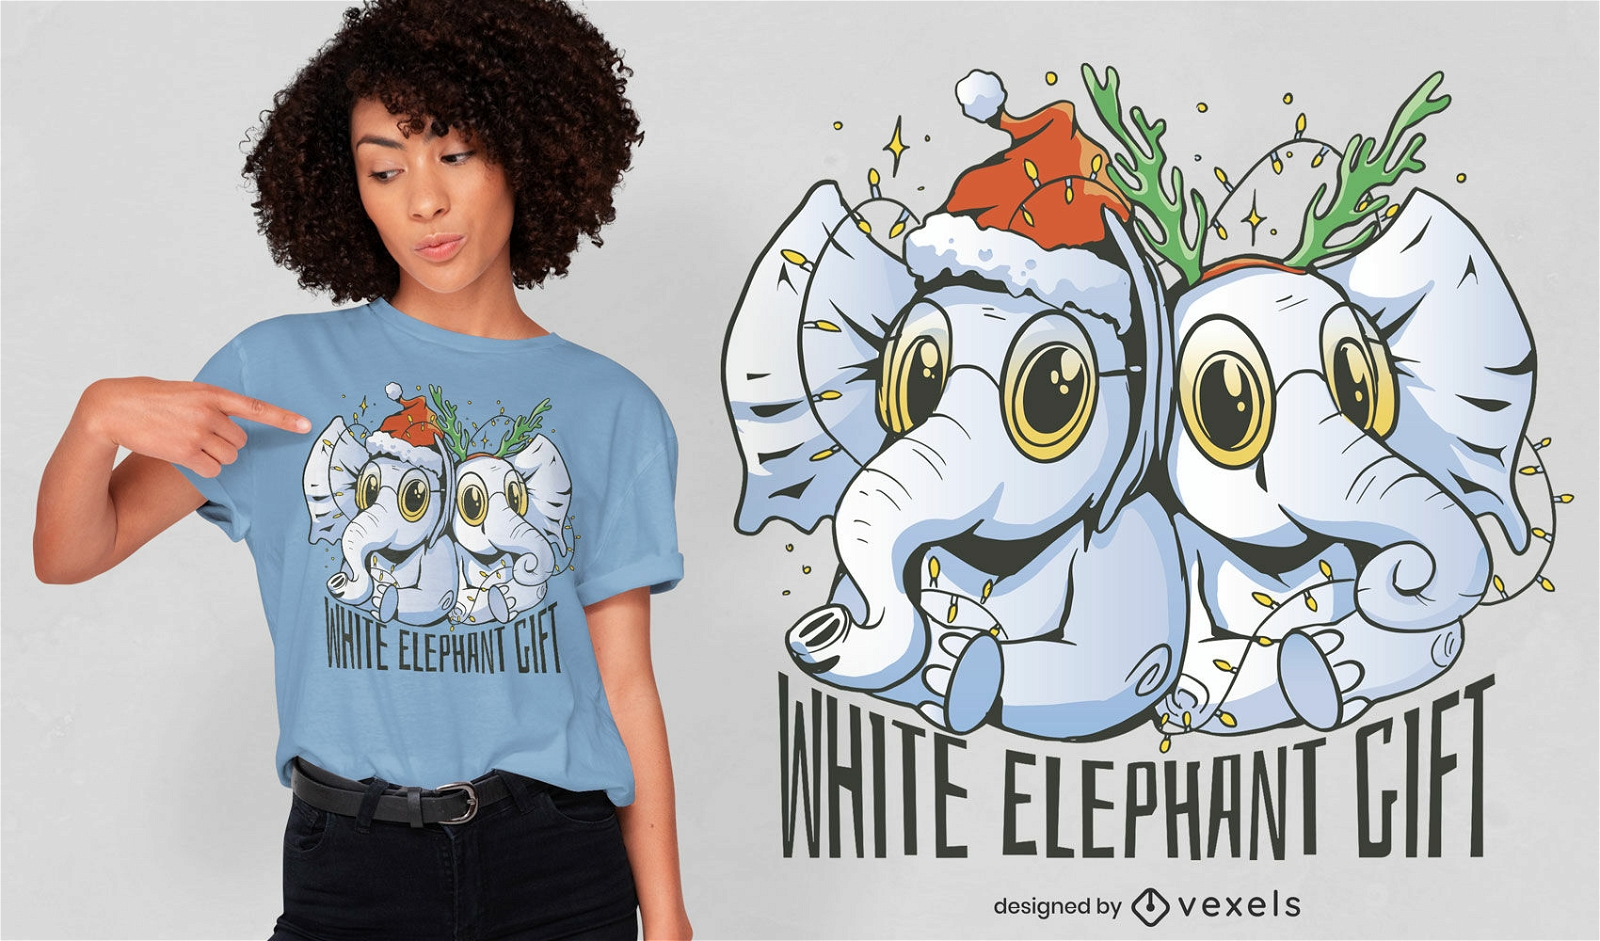 White elephant gift christmas t-shirt design